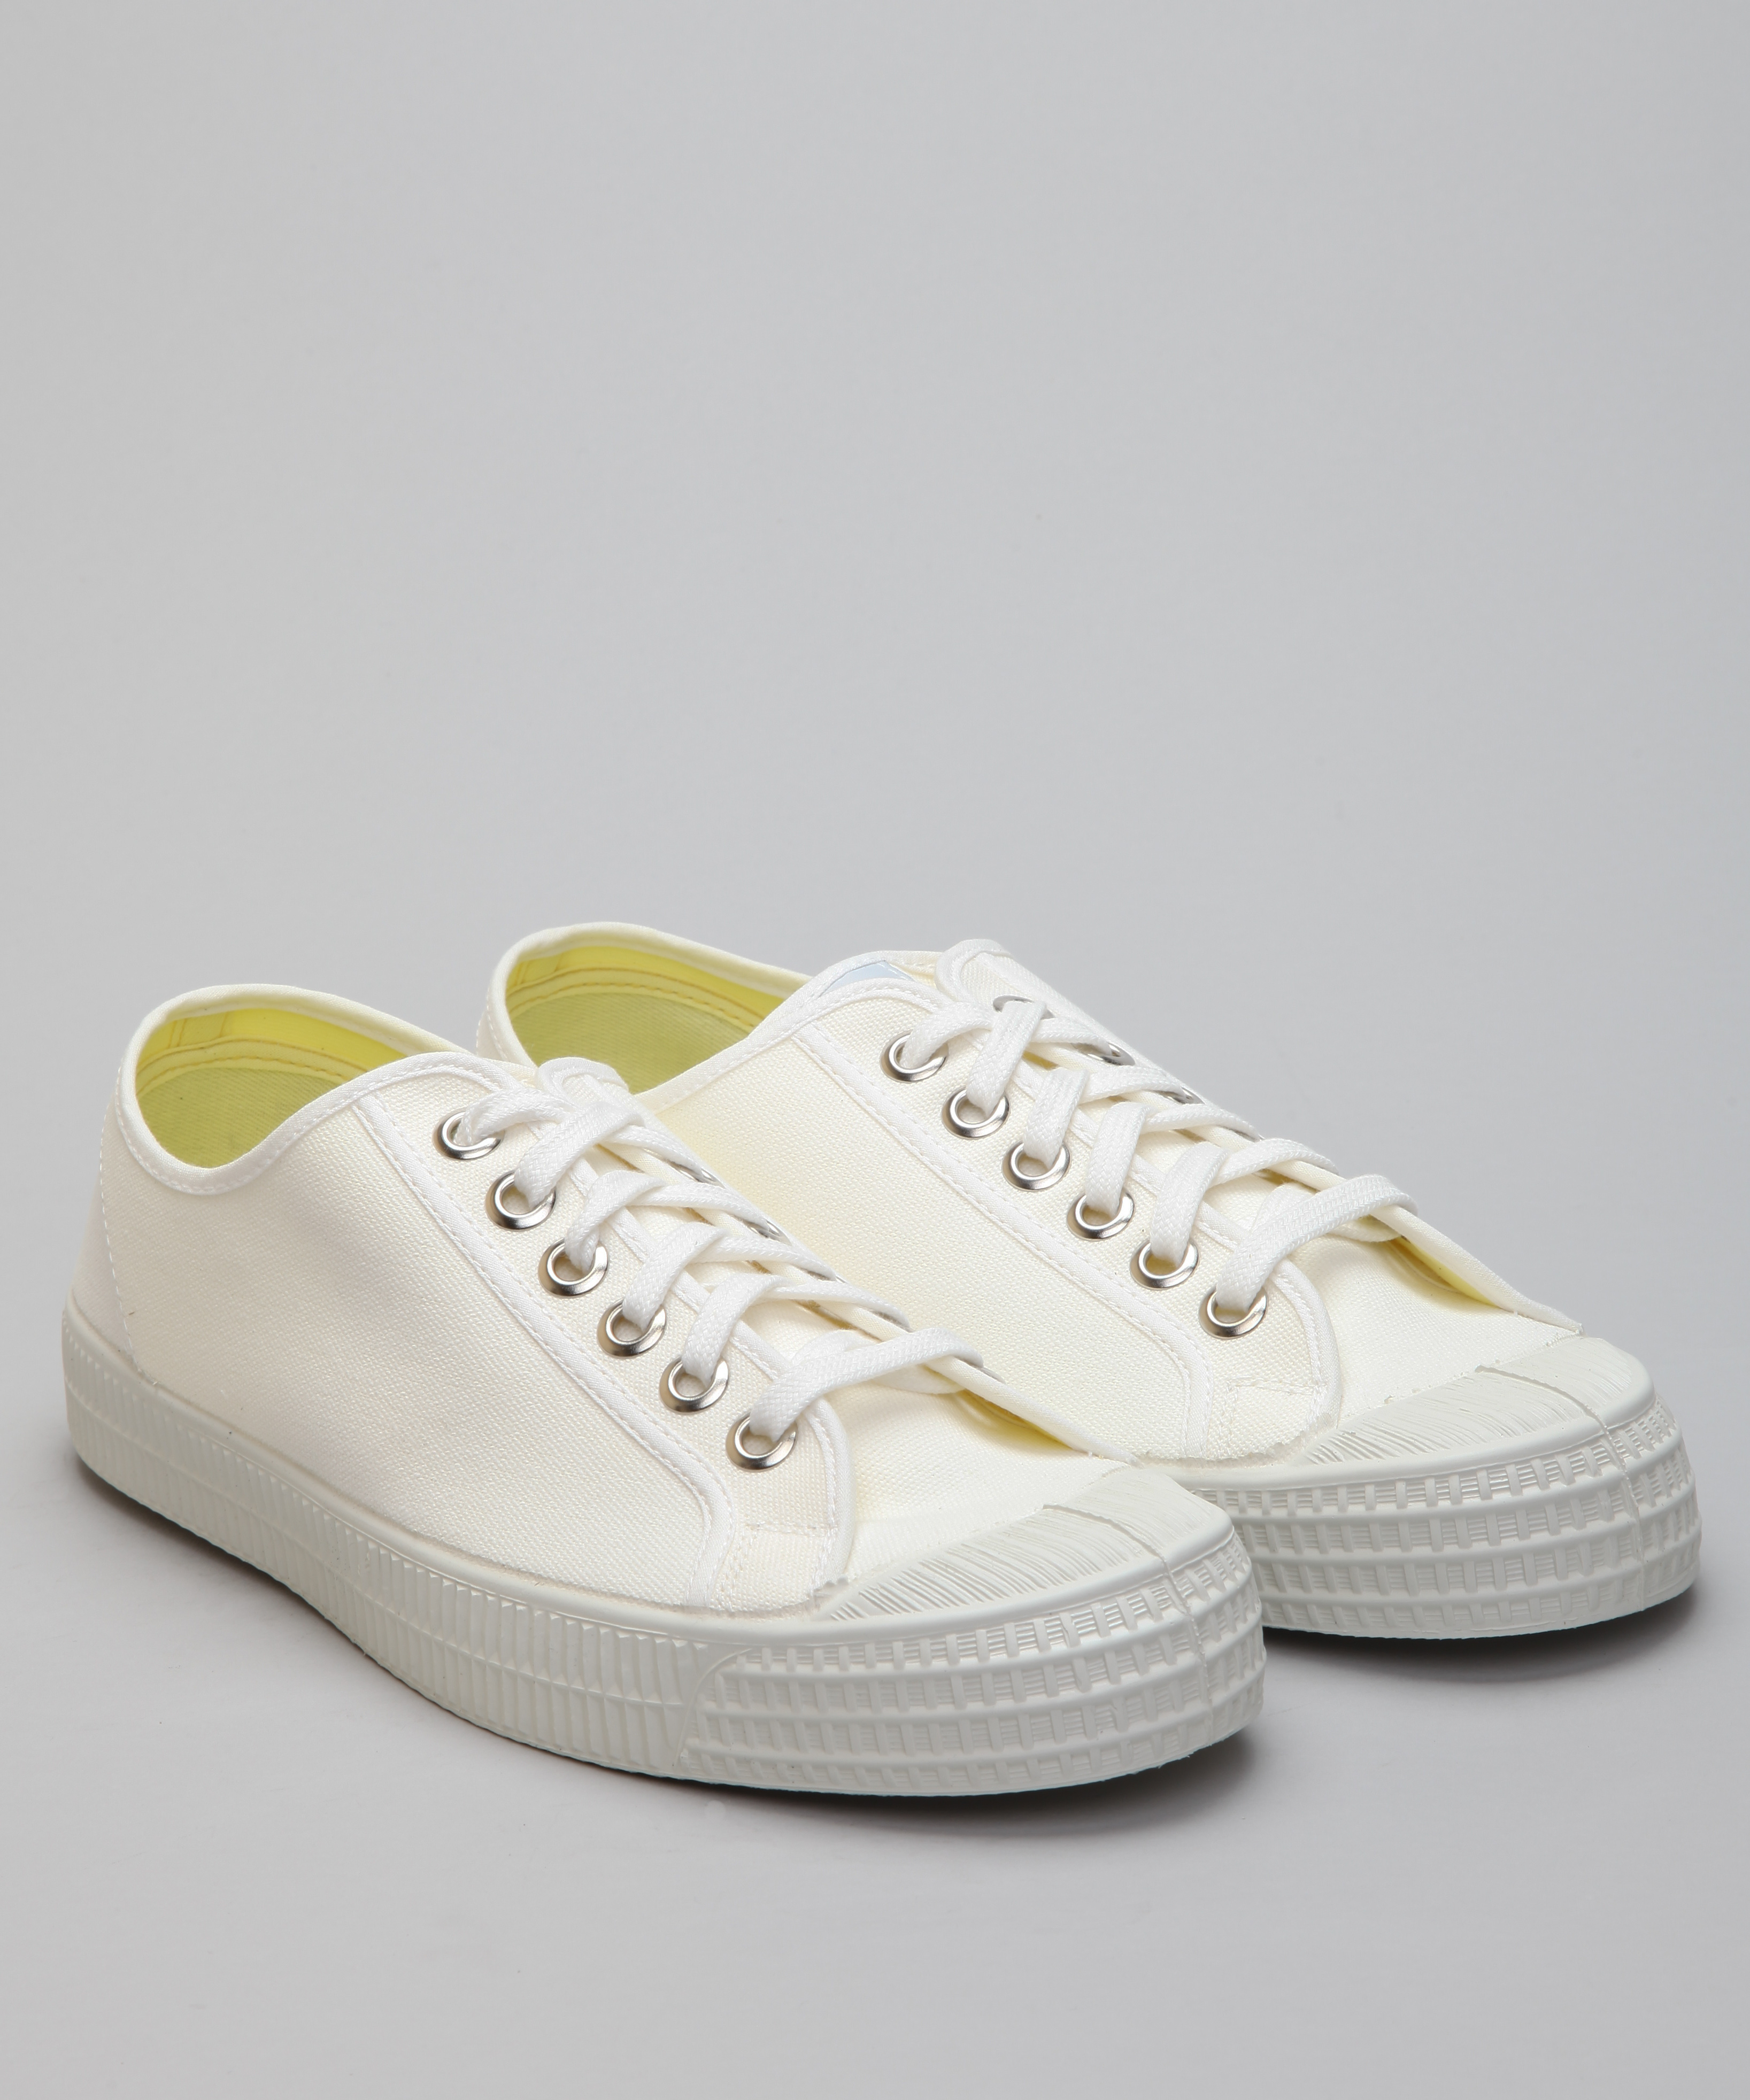 Novesta Star Master-White Shoes - Shoes 